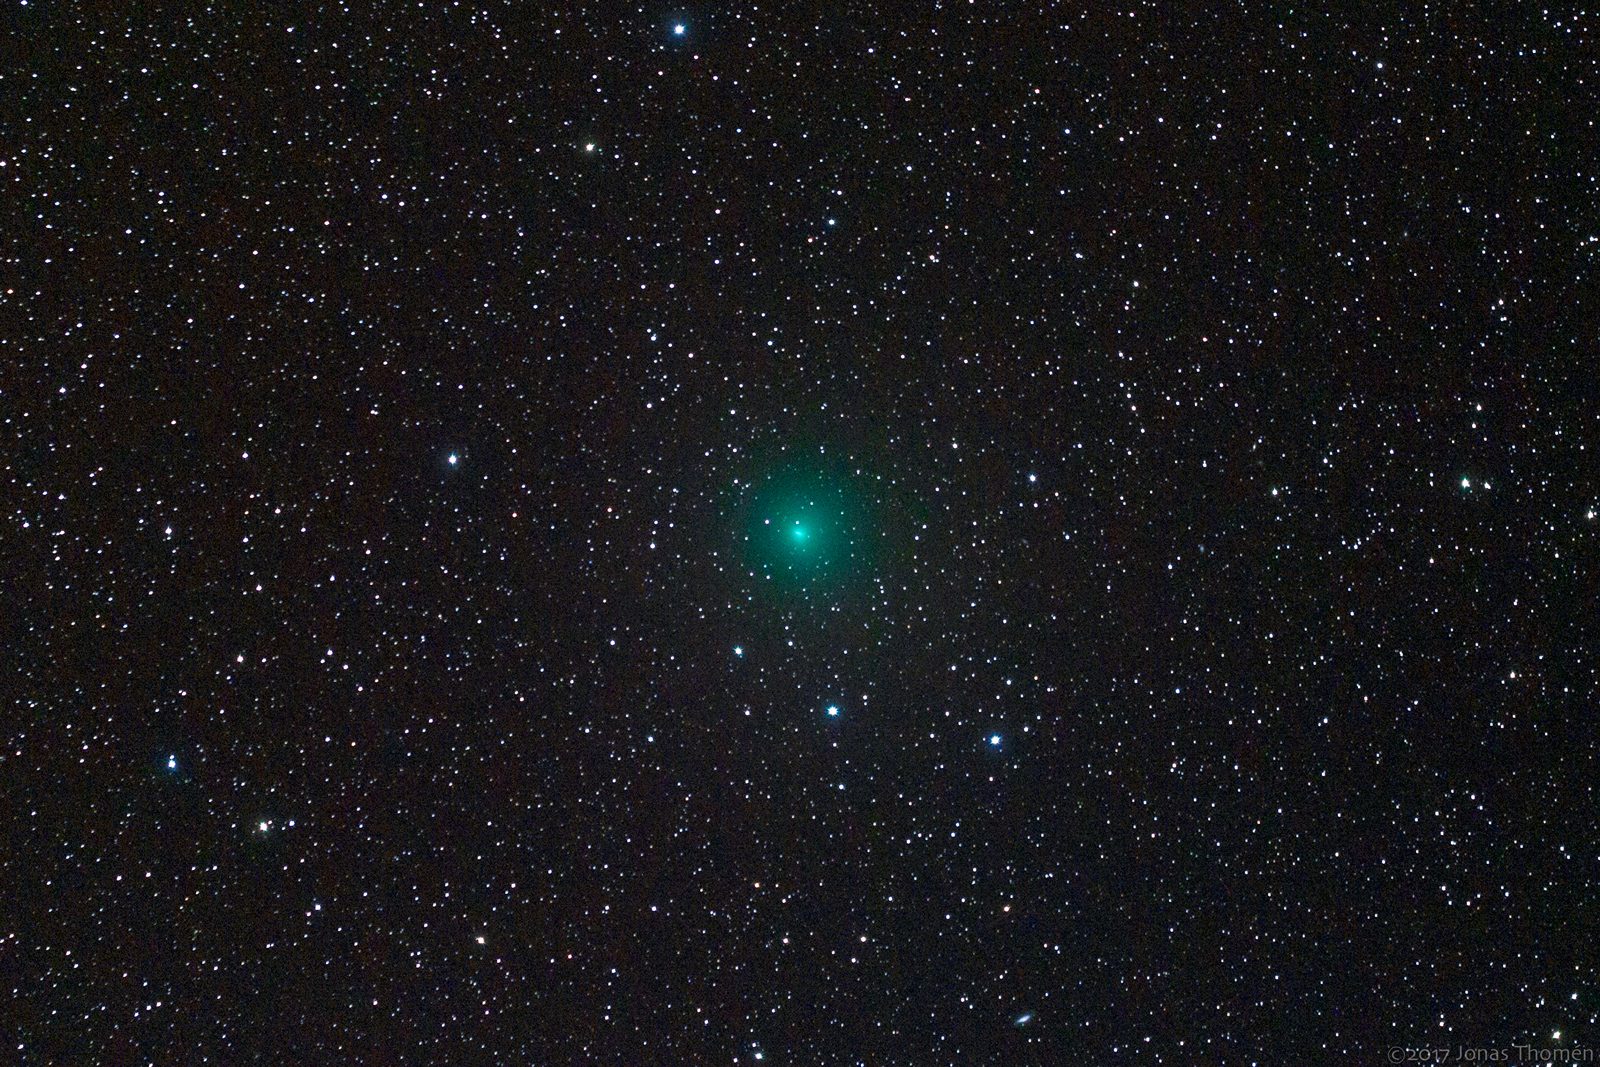 Comet 41P Tuttle Giacobini Kresák